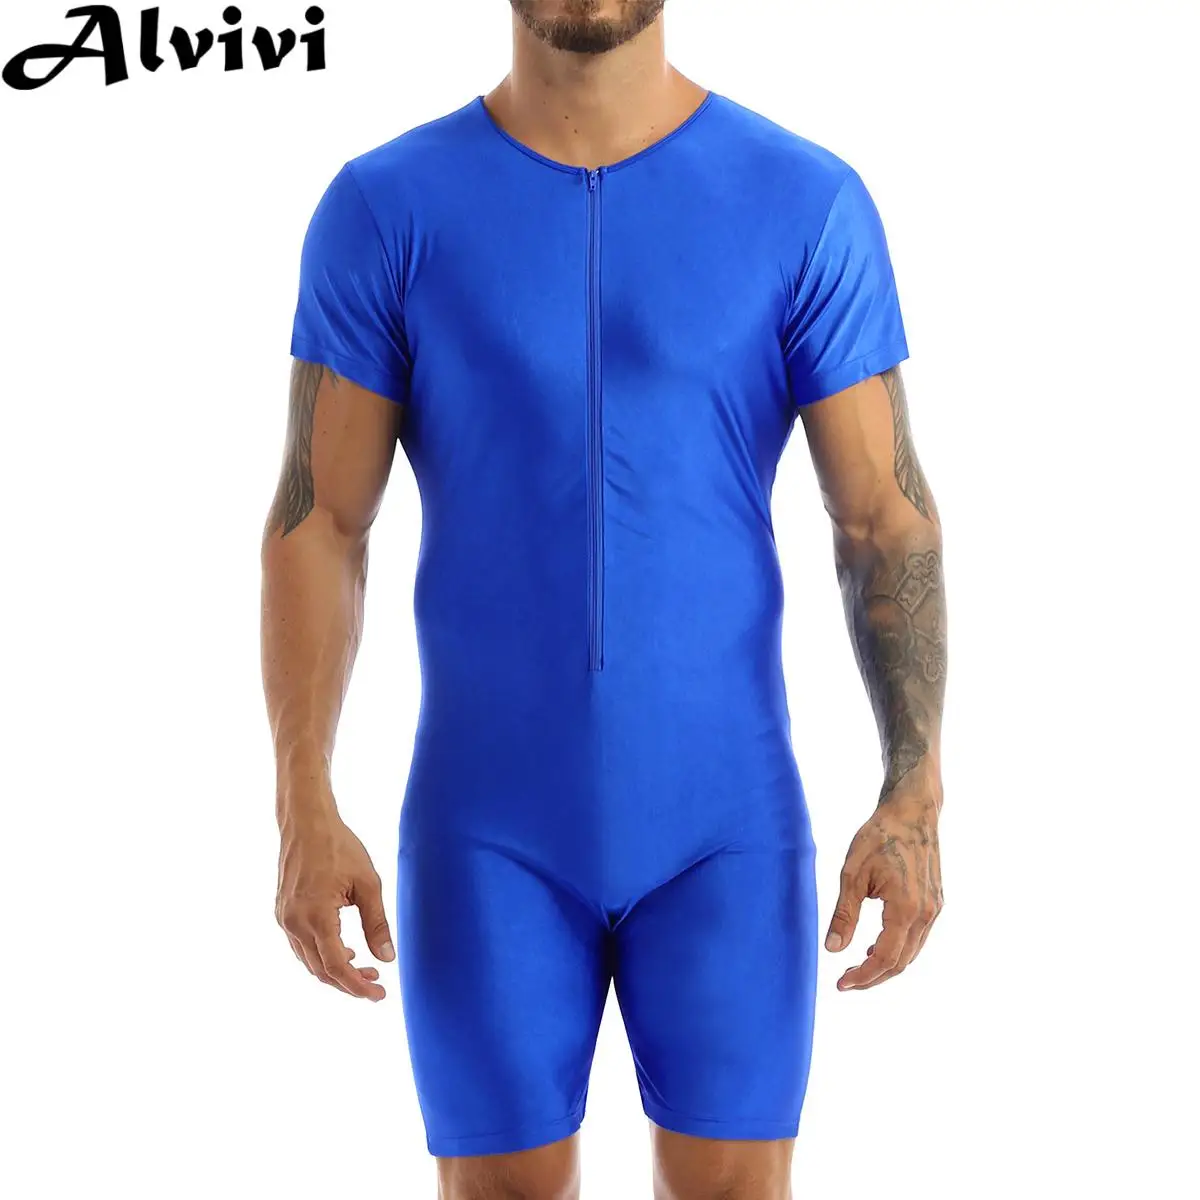 

Mens Short Sleeve Zipper Soft Boxer Bodysuit Swimsuit Rash Guard Wetsuit Beach Pool Party Swimwear Bathing Suit Surfing Jumpsuit